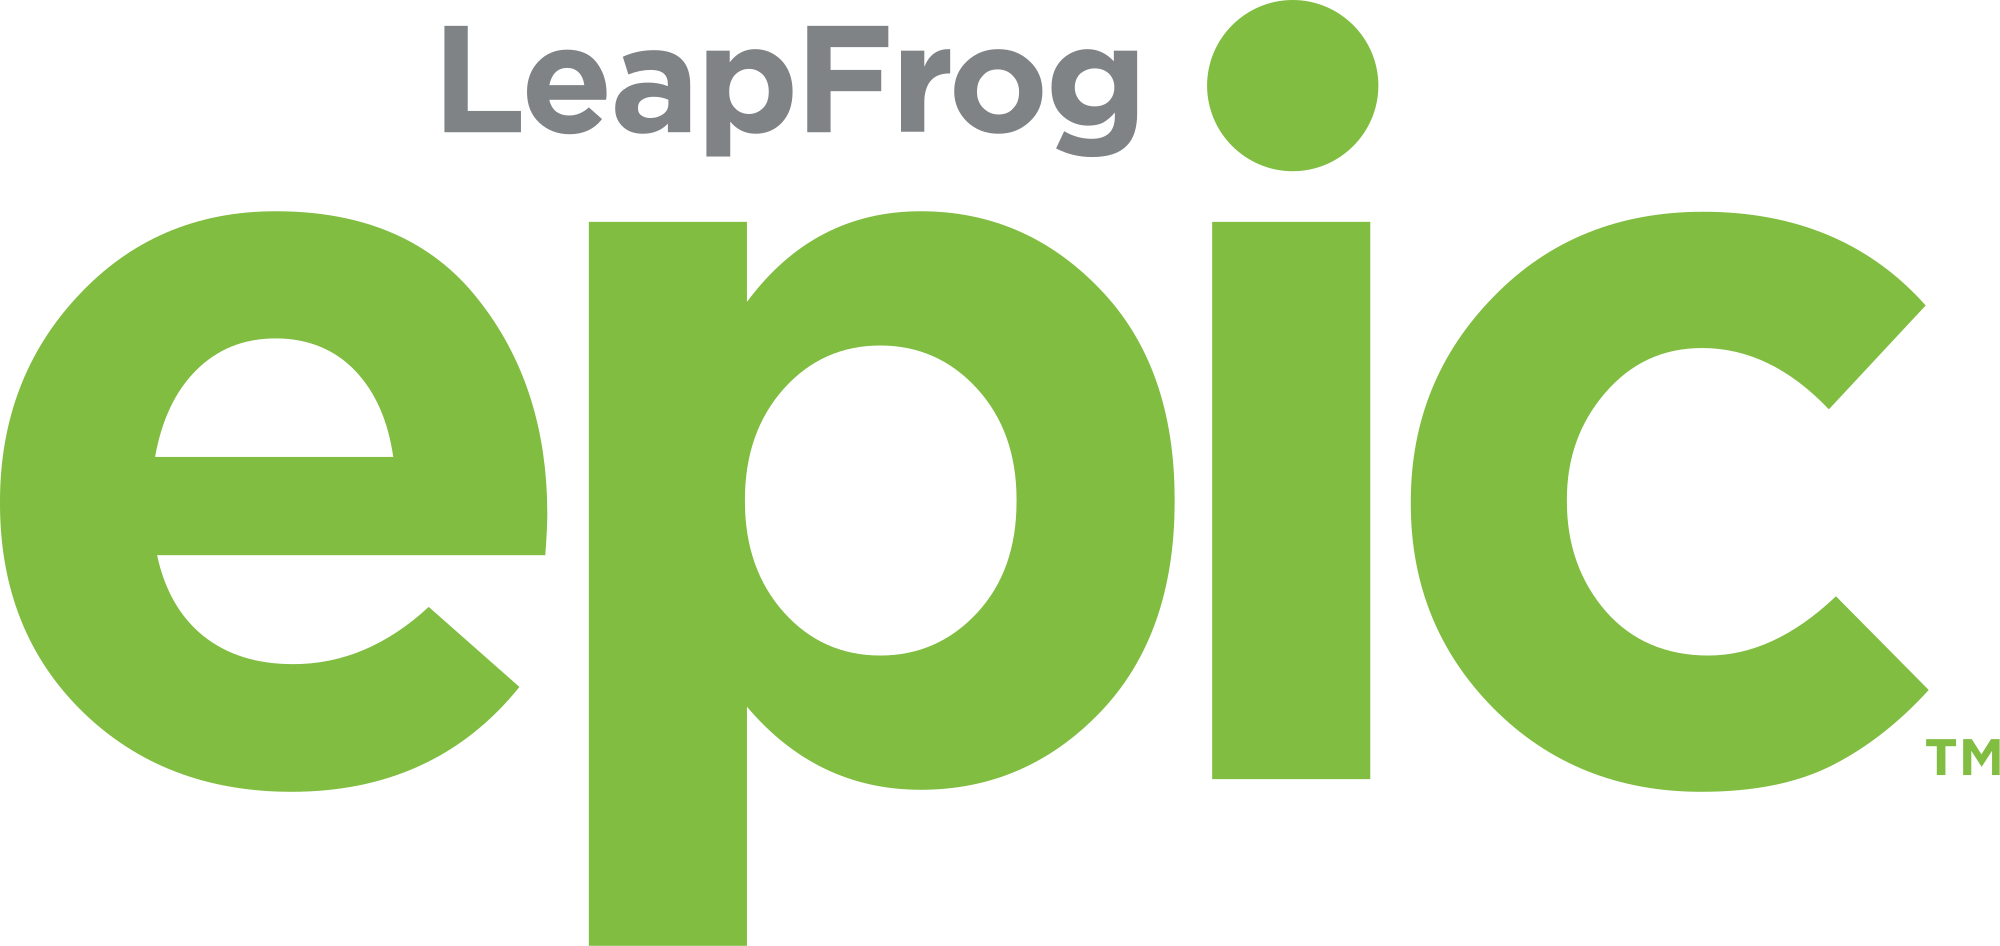 LeapFrog Logo - LeapFrog Epic logo.svg